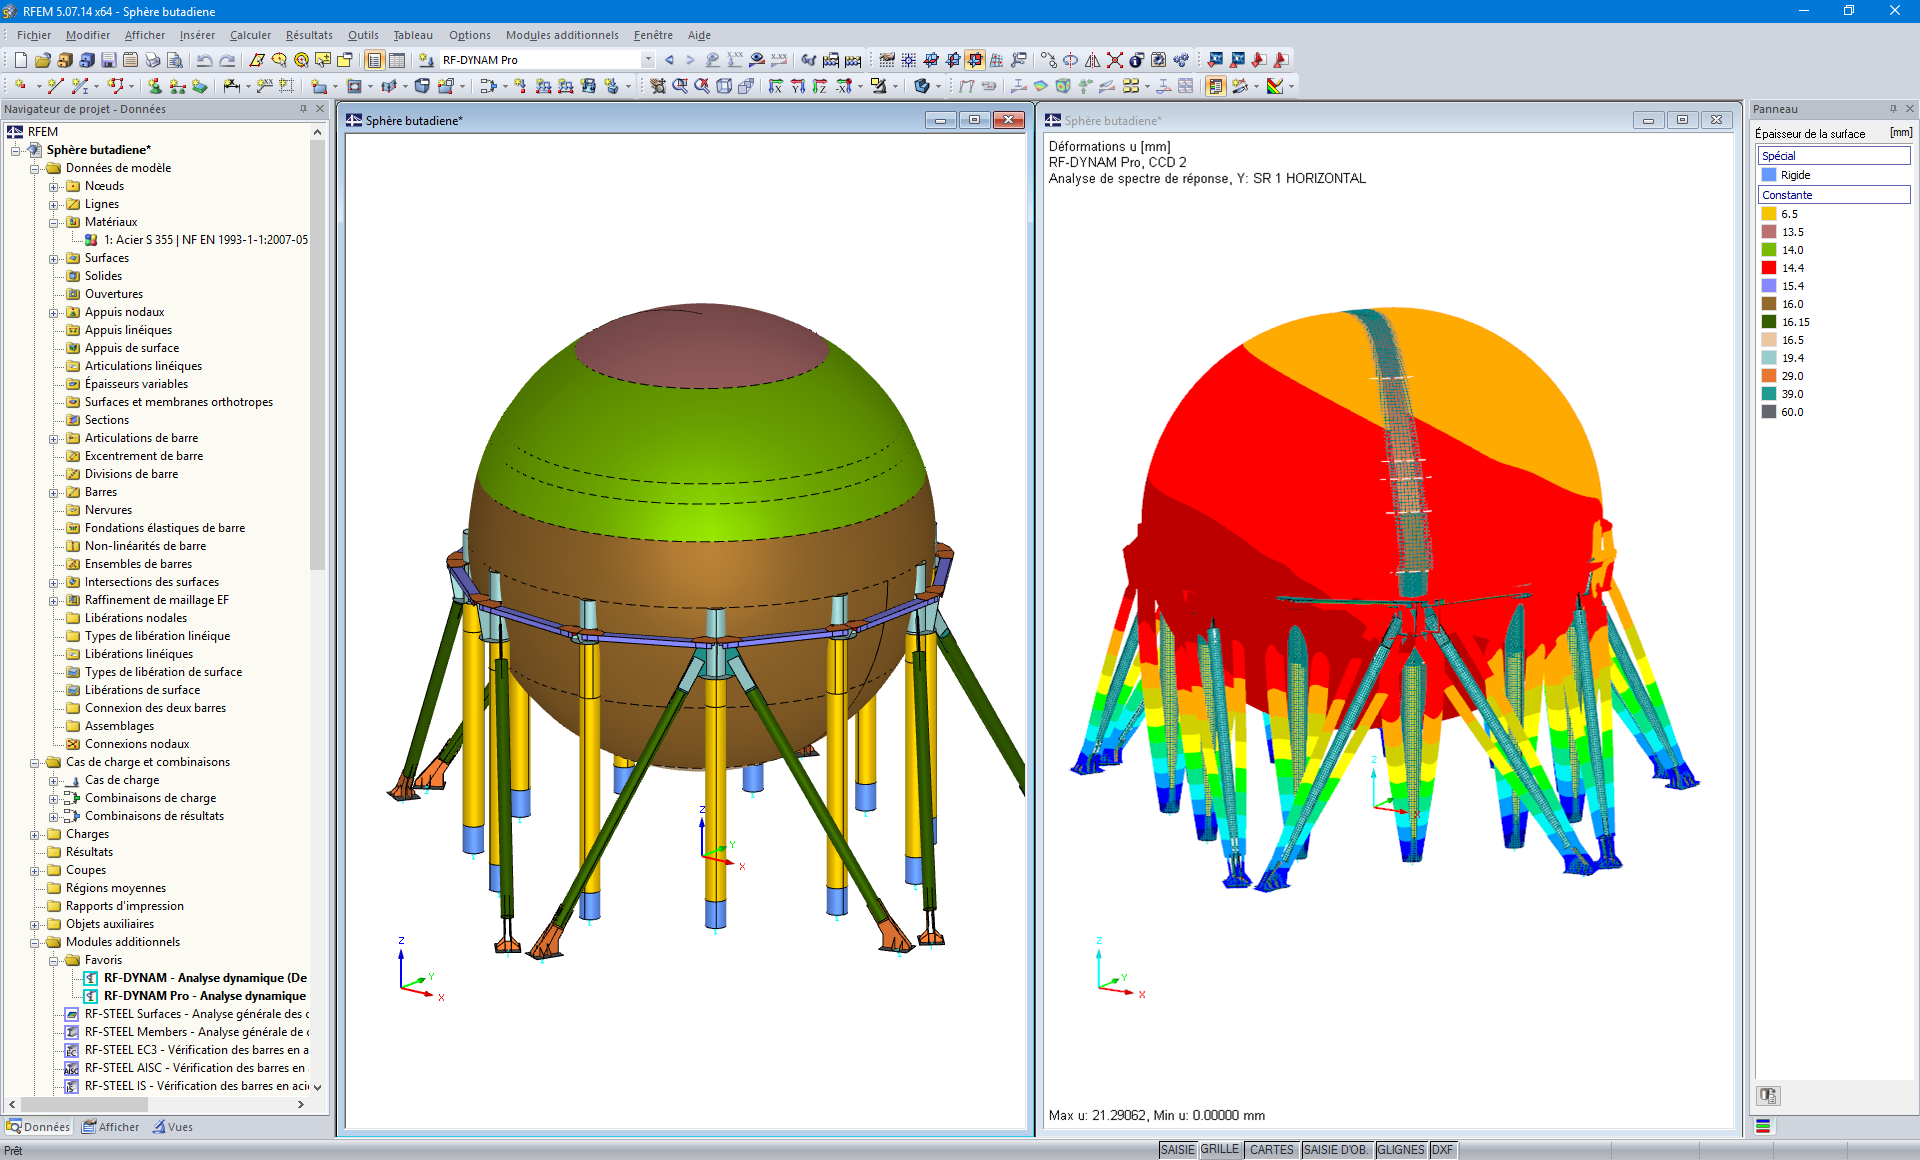 Analytisches 3D-Modell in RFEM (links) und in RF-DYNAM Pro berechnete Eigenform (rechts)